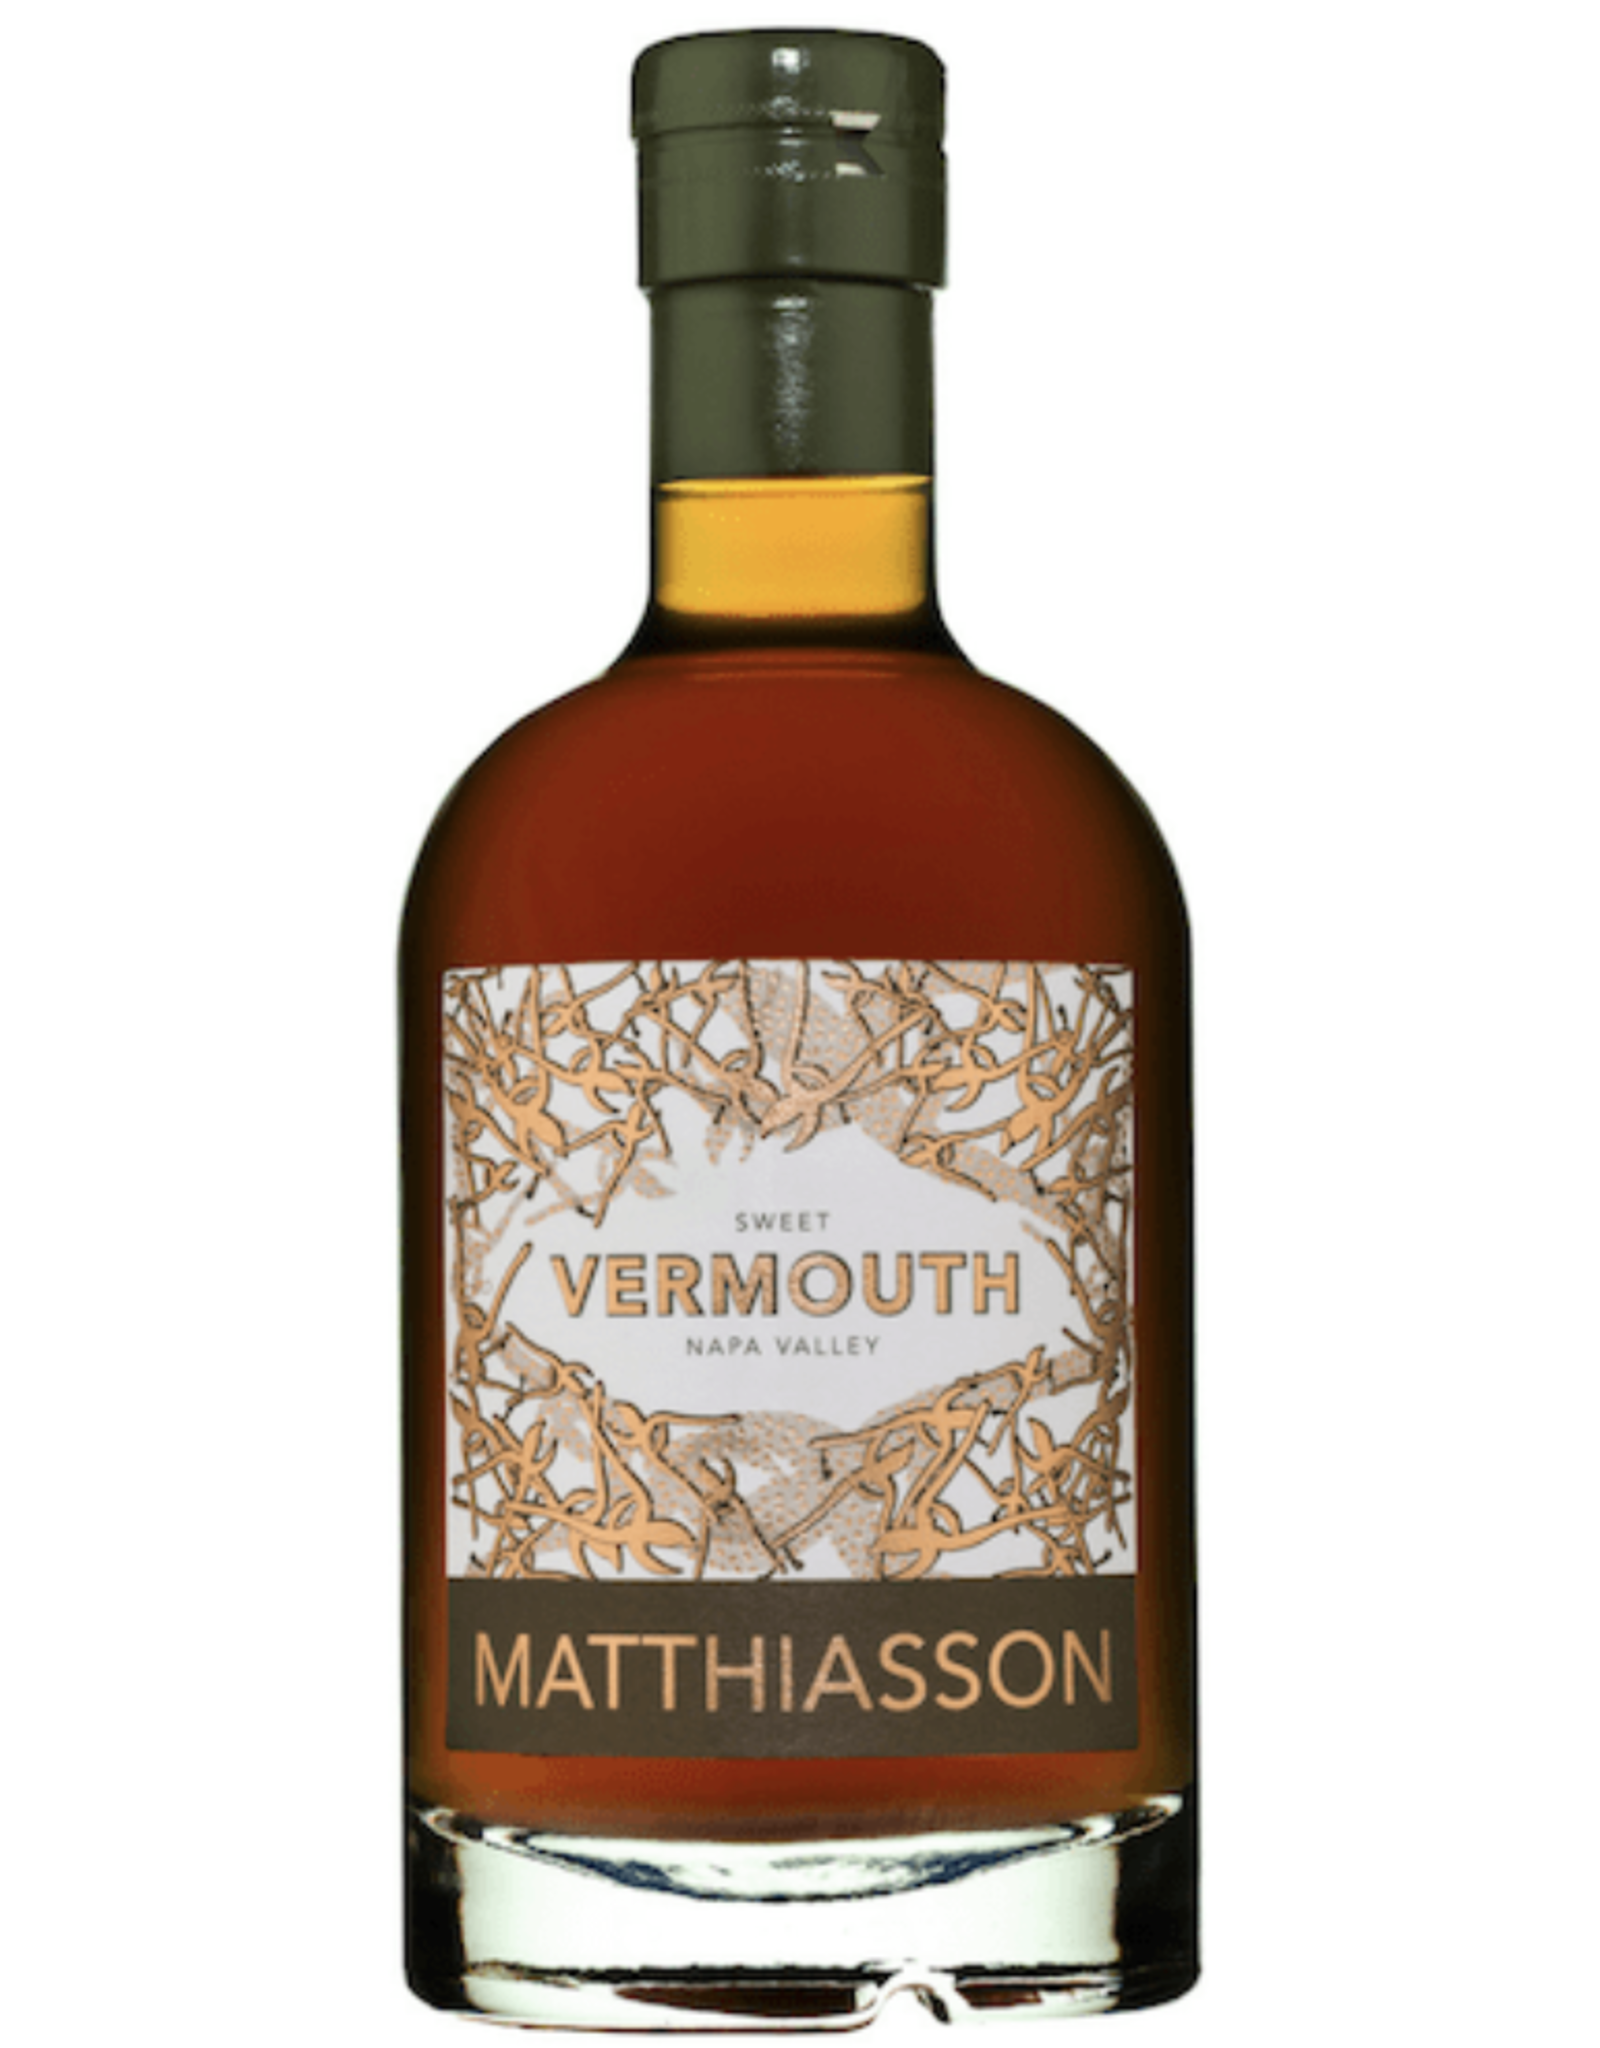 Matthiasson Matthiasson Sweet Vermouth, Napa Valley 375ml